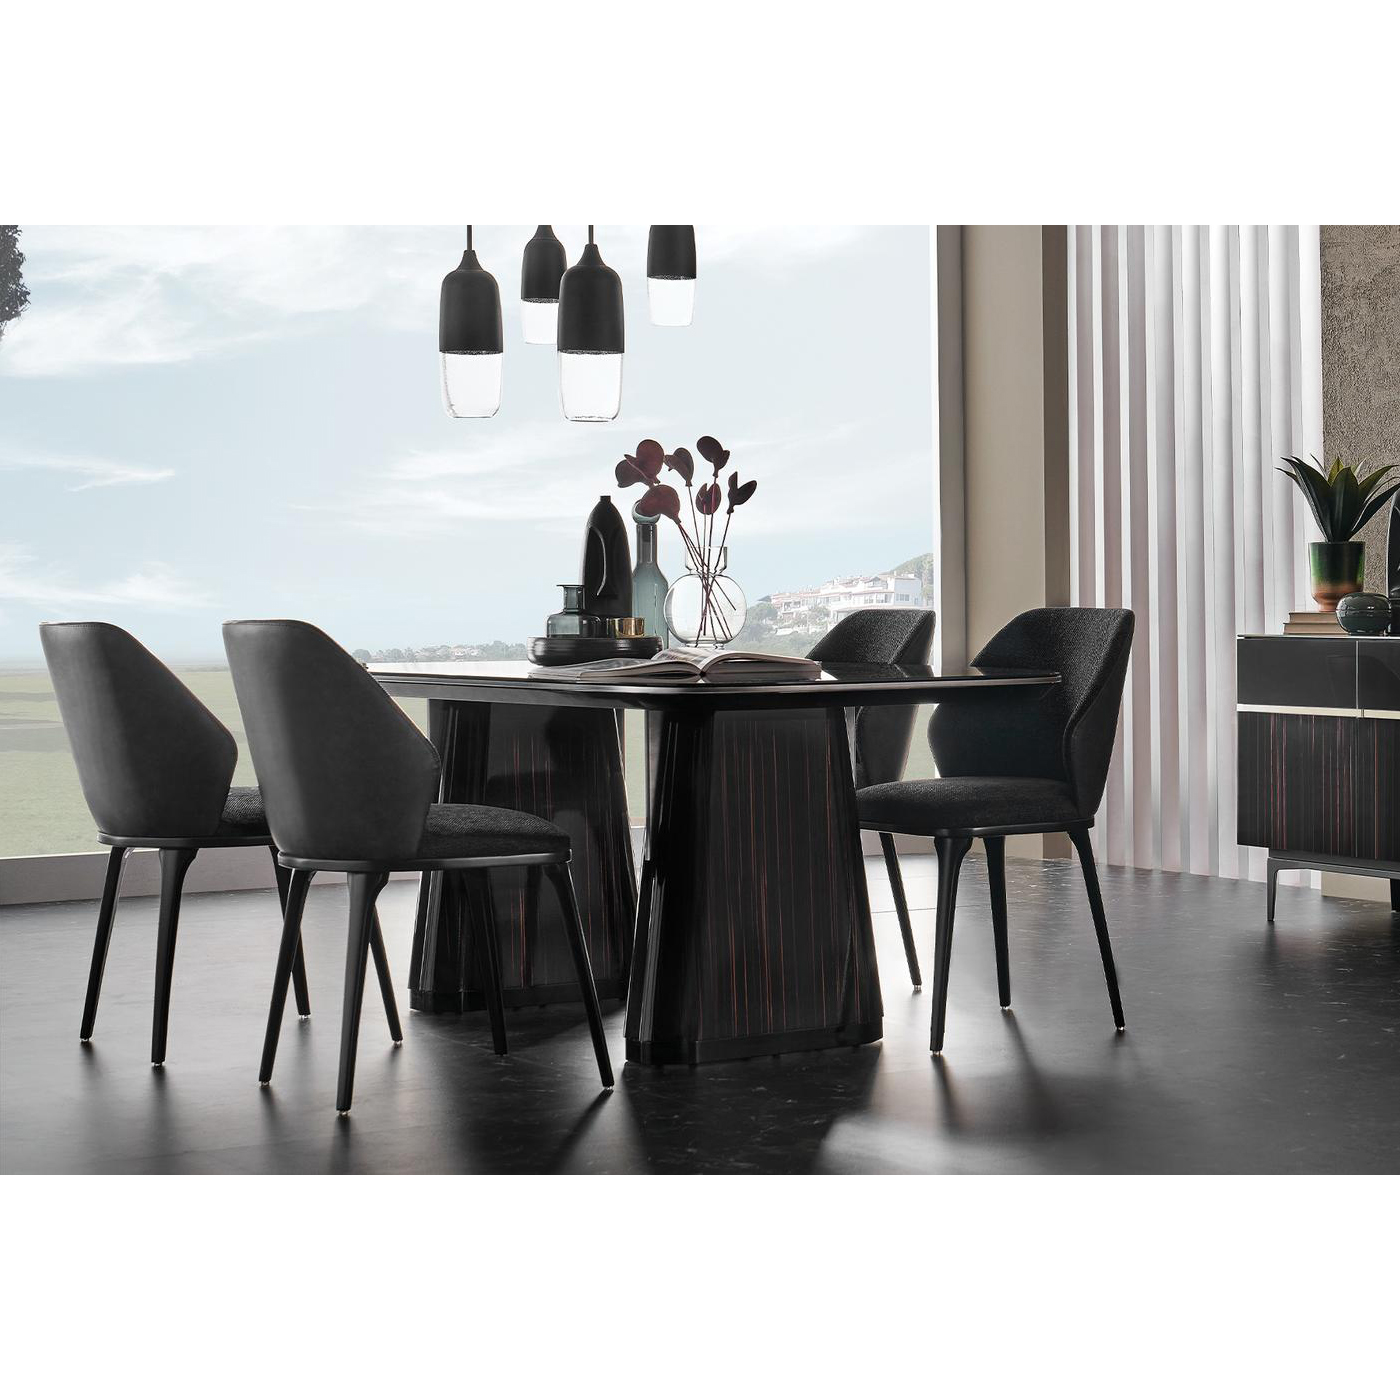 Стол обеденный Enza Home Valdera, прямоугольный, размер 200х100х76 см, стеклянная поверхность07.180.0563.0000.0174.0000.